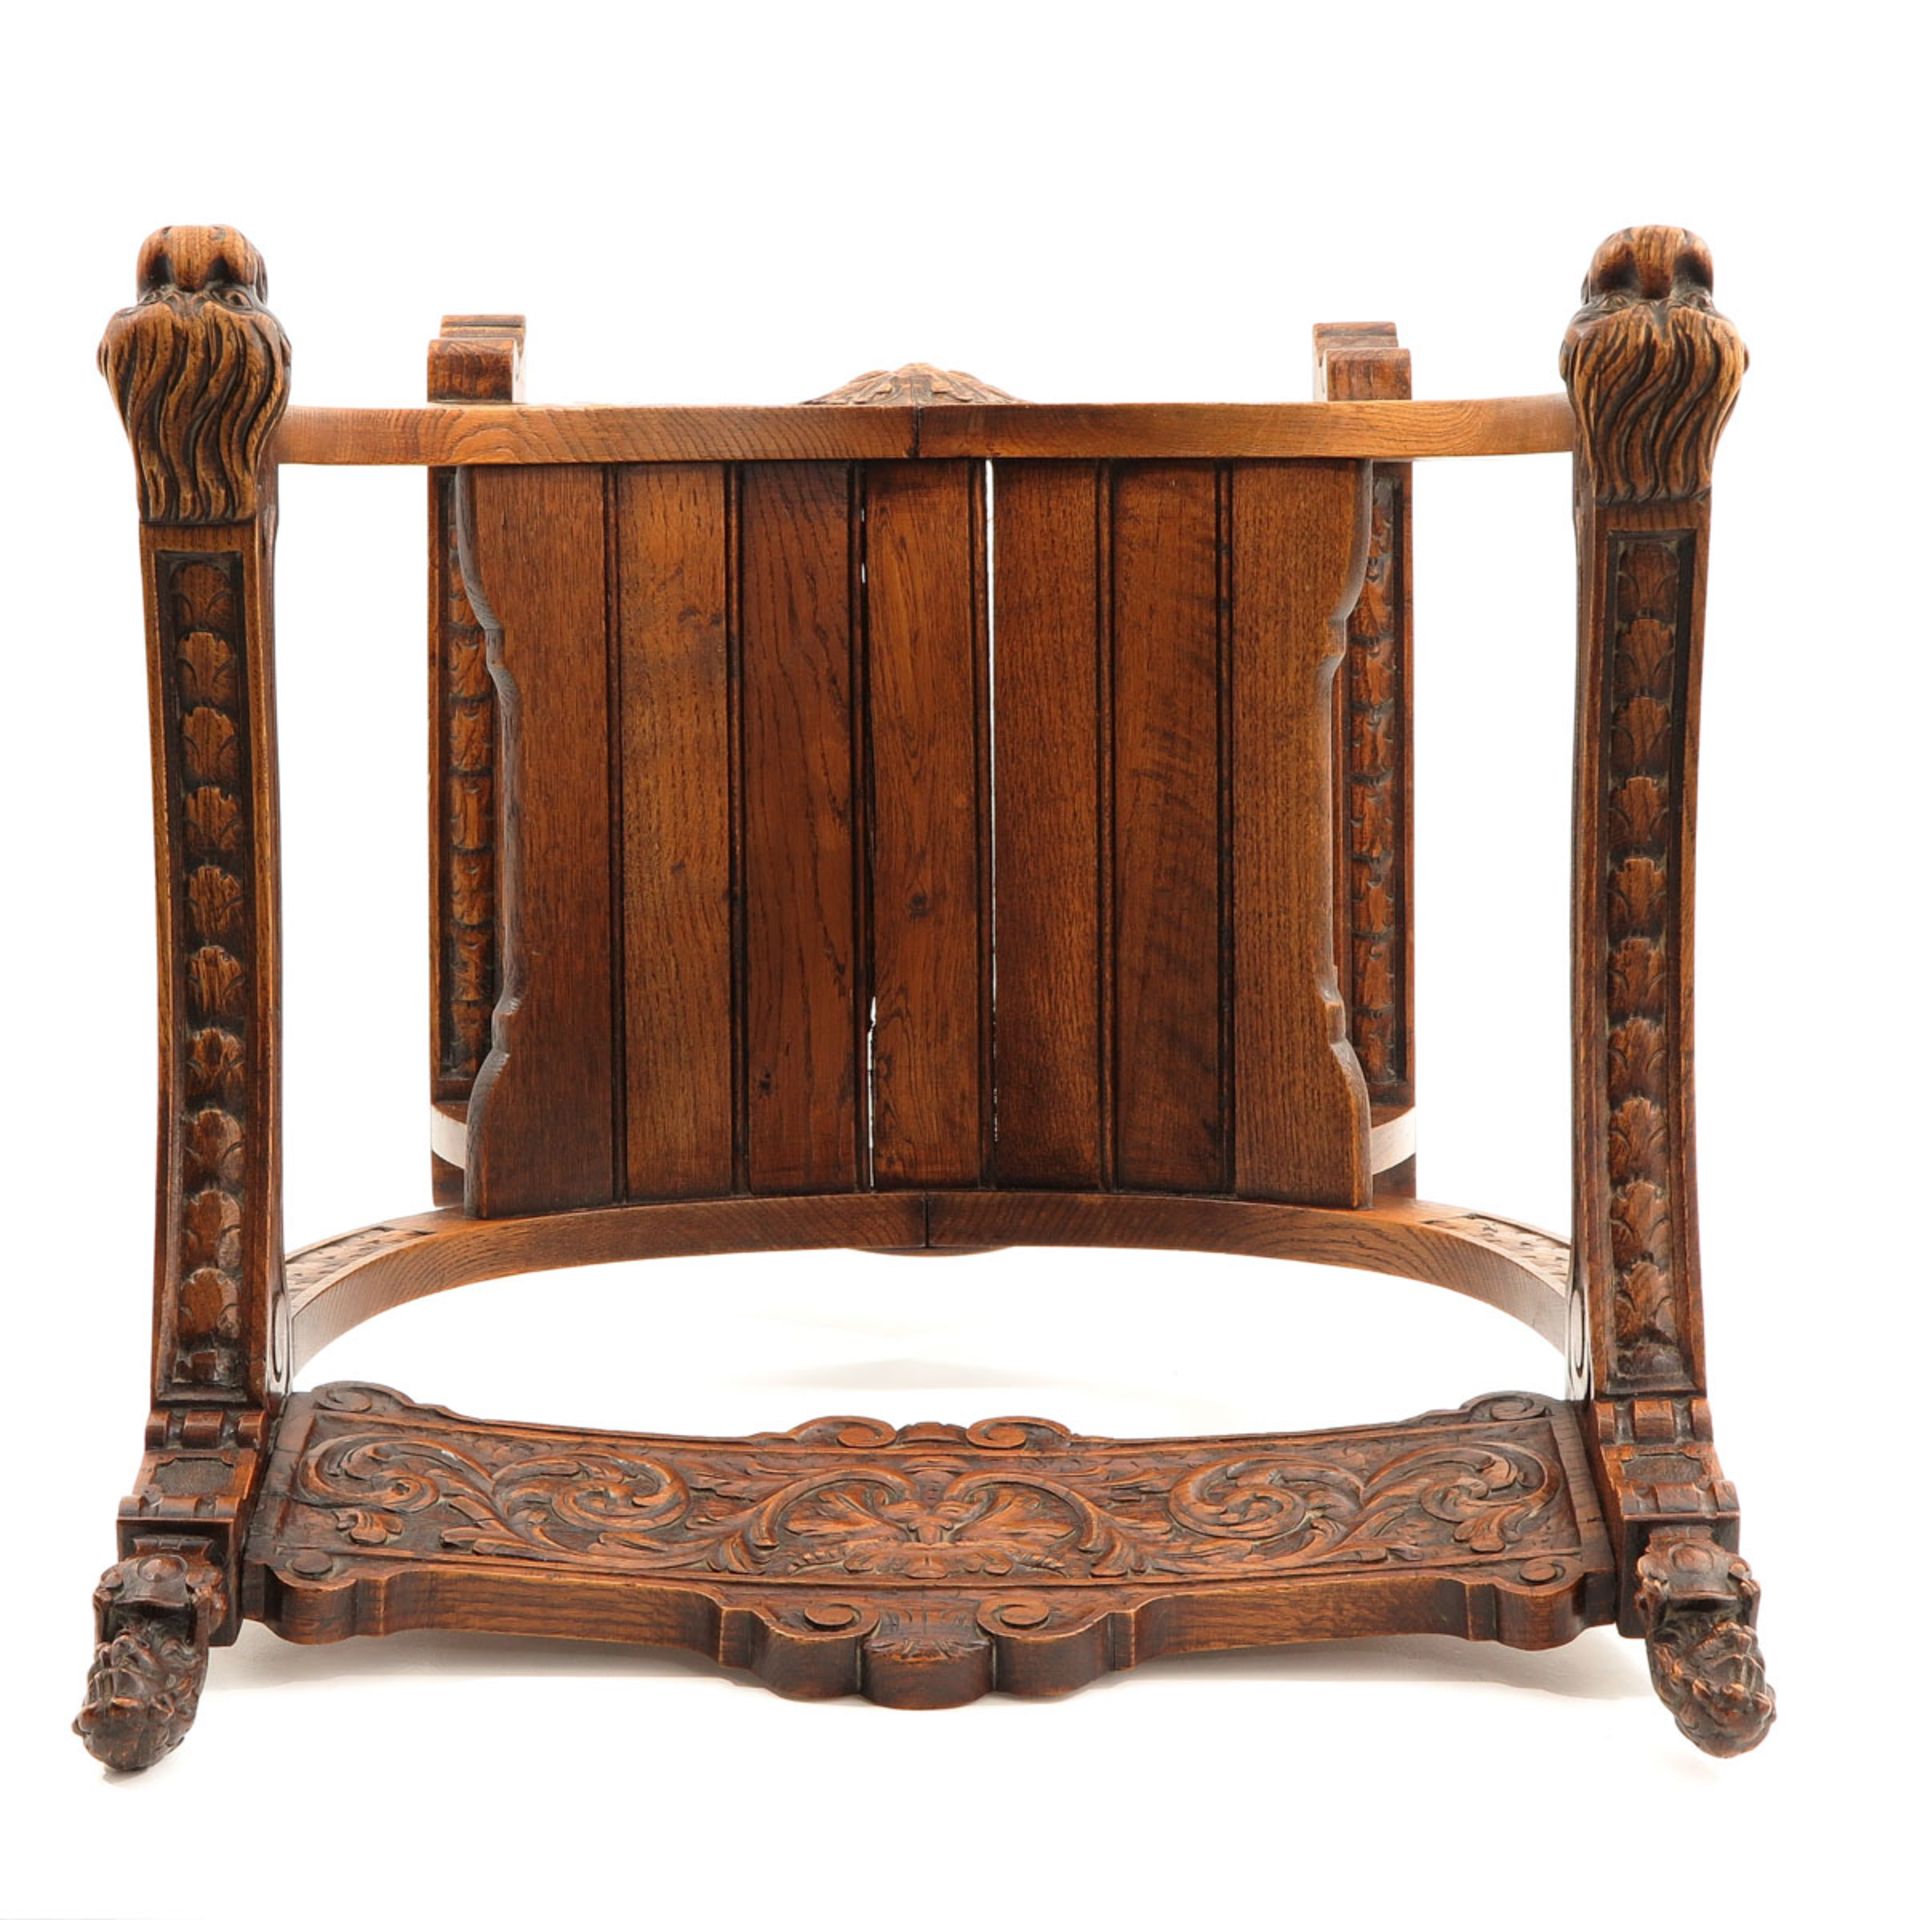 A Dagobert Chair - Image 5 of 10